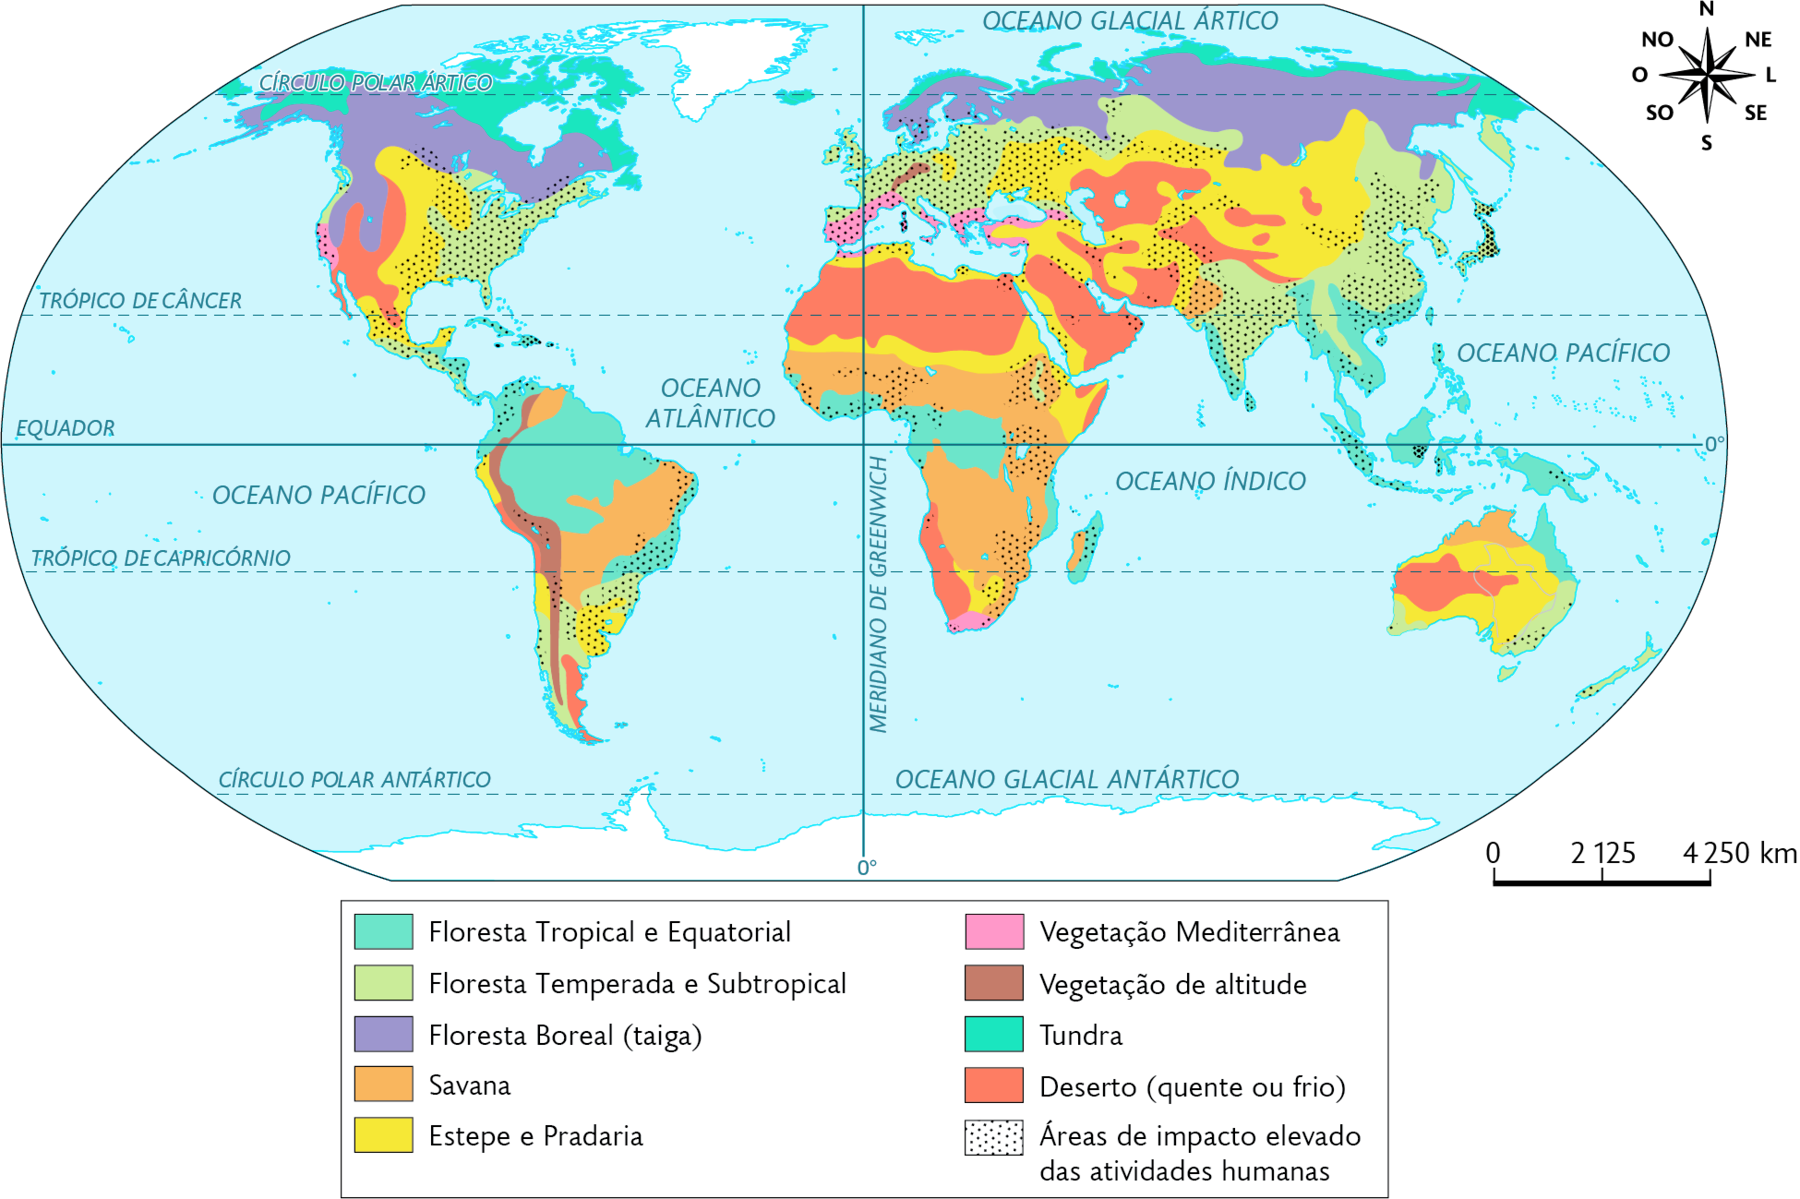 Mapa-múndi. Formações vegetais no mundo (2019). Floresta Tropical e Equatorial: sul da América Central, norte e leste da América do Sul, oeste e centro da África, sul e sudeste da Ásia, incluindo suas ilhas, e nordeste da Austrália. Floresta Temperada e Subtropical: leste da América do Norte, centro da América Central, áreas no sul da América do Sul, toda a porção central da Europa, faixa ao norte, área leste e sudeste da Ásia. Floresta Boreal (taiga): Norte da América do Norte, da Europa e da Ásia. Savana: pequena área ao norte e faixa nordeste e centro-oeste da América do Sul, centro e sul da África, pequena área ao sul da Ásia e norte da Austrália. Estepe e Pradaria: centro e sul da América do Norte, áreas oeste e sul da América do Sul, faixas no norte e áreas no leste e no sul da África, área dispersas no centro e sul da Ásia, e centro e sul da Austrália. Vegetação Mediterrânea: área oeste da América do Norte e sul, faixa sul da Europa e extremo sul da África. Vegetação de altitude: costa oeste da América do Sul e pequena área no centro-oeste da Europa. Tundra: Norte da América do Norte e faixa no extremo norte da Europa e da Ásia. Deserto (quente ou frio): oeste da América do Norte, e pequenas áreas no oeste e no sul da América do Sul, norte e sudoeste da África, áreas dispersas no centro e ao sul da Ásia e oeste da Austrália. Áreas de impacto elevado das atividades humanas: centro-leste da América do Norte, centro da América Central, noroeste, região costeira e sul da América do Sul, quase toda a Europa com exceção da faixa norte, oeste, áreas dispersas no centro, região sul e leste da Ásia, áreas no leste, oeste e sul da África e pequena área no sudeste da Austrália. No canto superior direito, a rosa dos ventos e na parte inferior, a escala: 2125 quilômetros por centímetro.